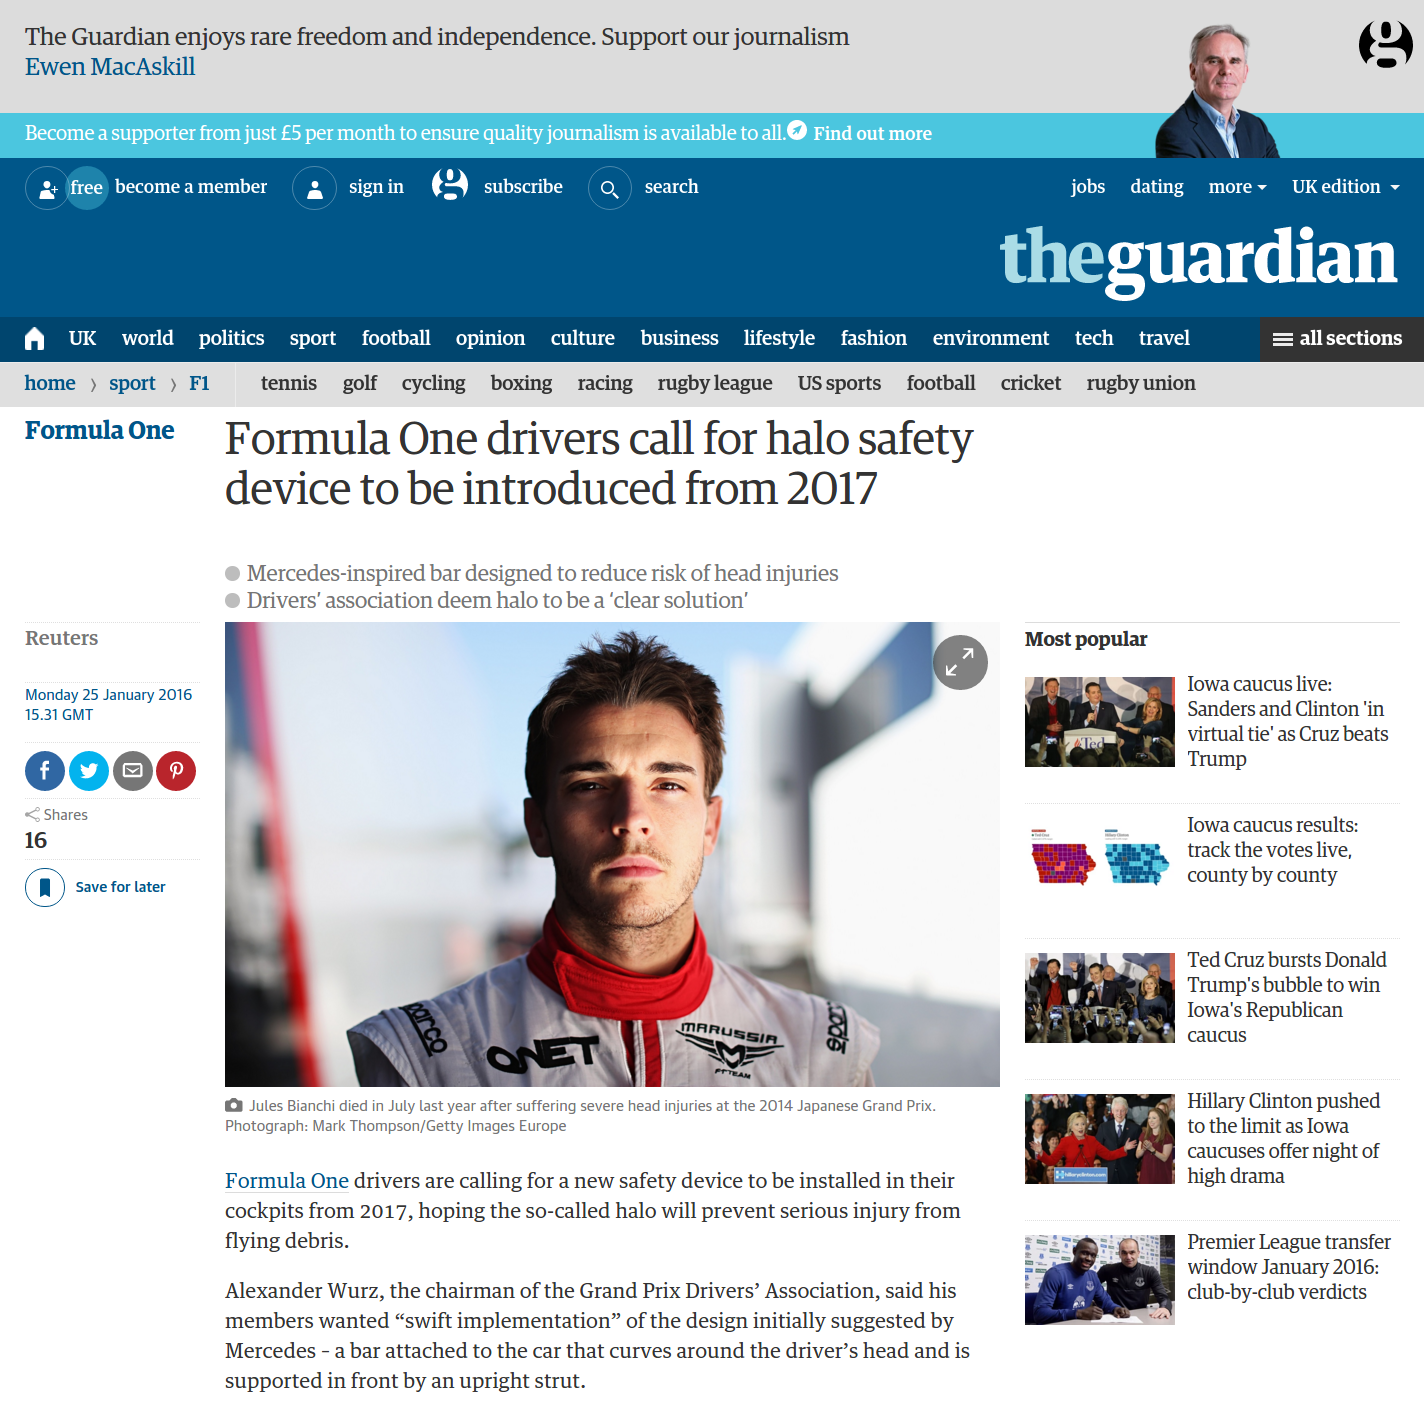 Сайт The Guardian использует AngularJS